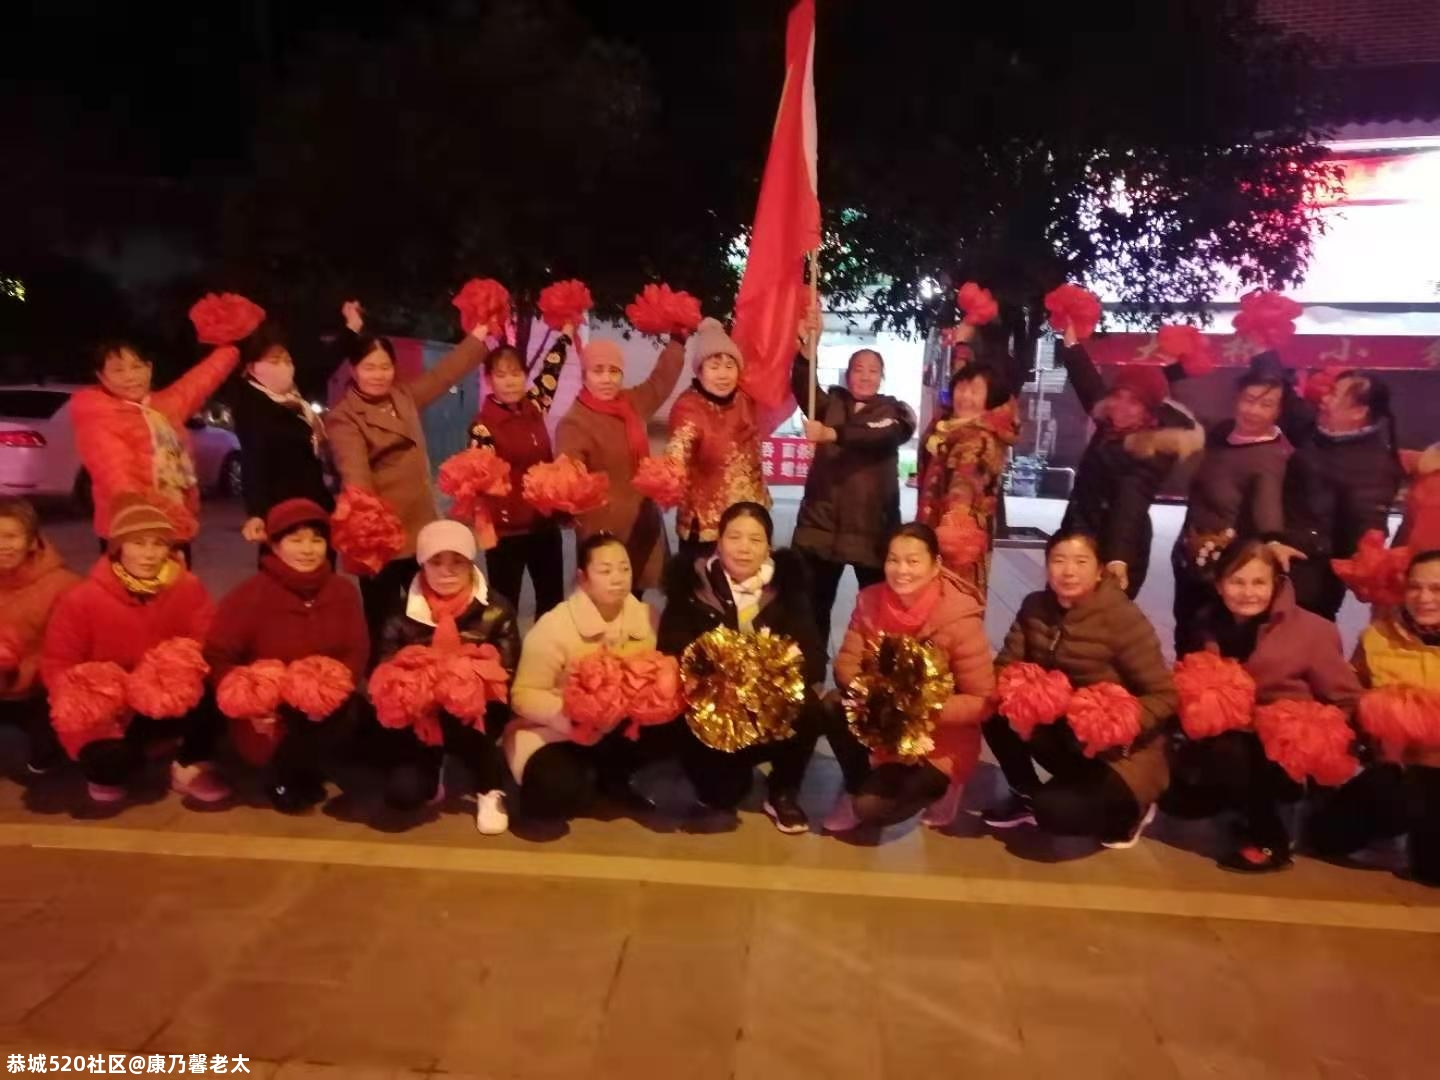 今晚八时，在文武广场举办纪念毛泽东诞辰127周年暨庆2021年元旦联欢晚会。659 / 作者:康乃馨老太 / 帖子ID:280833